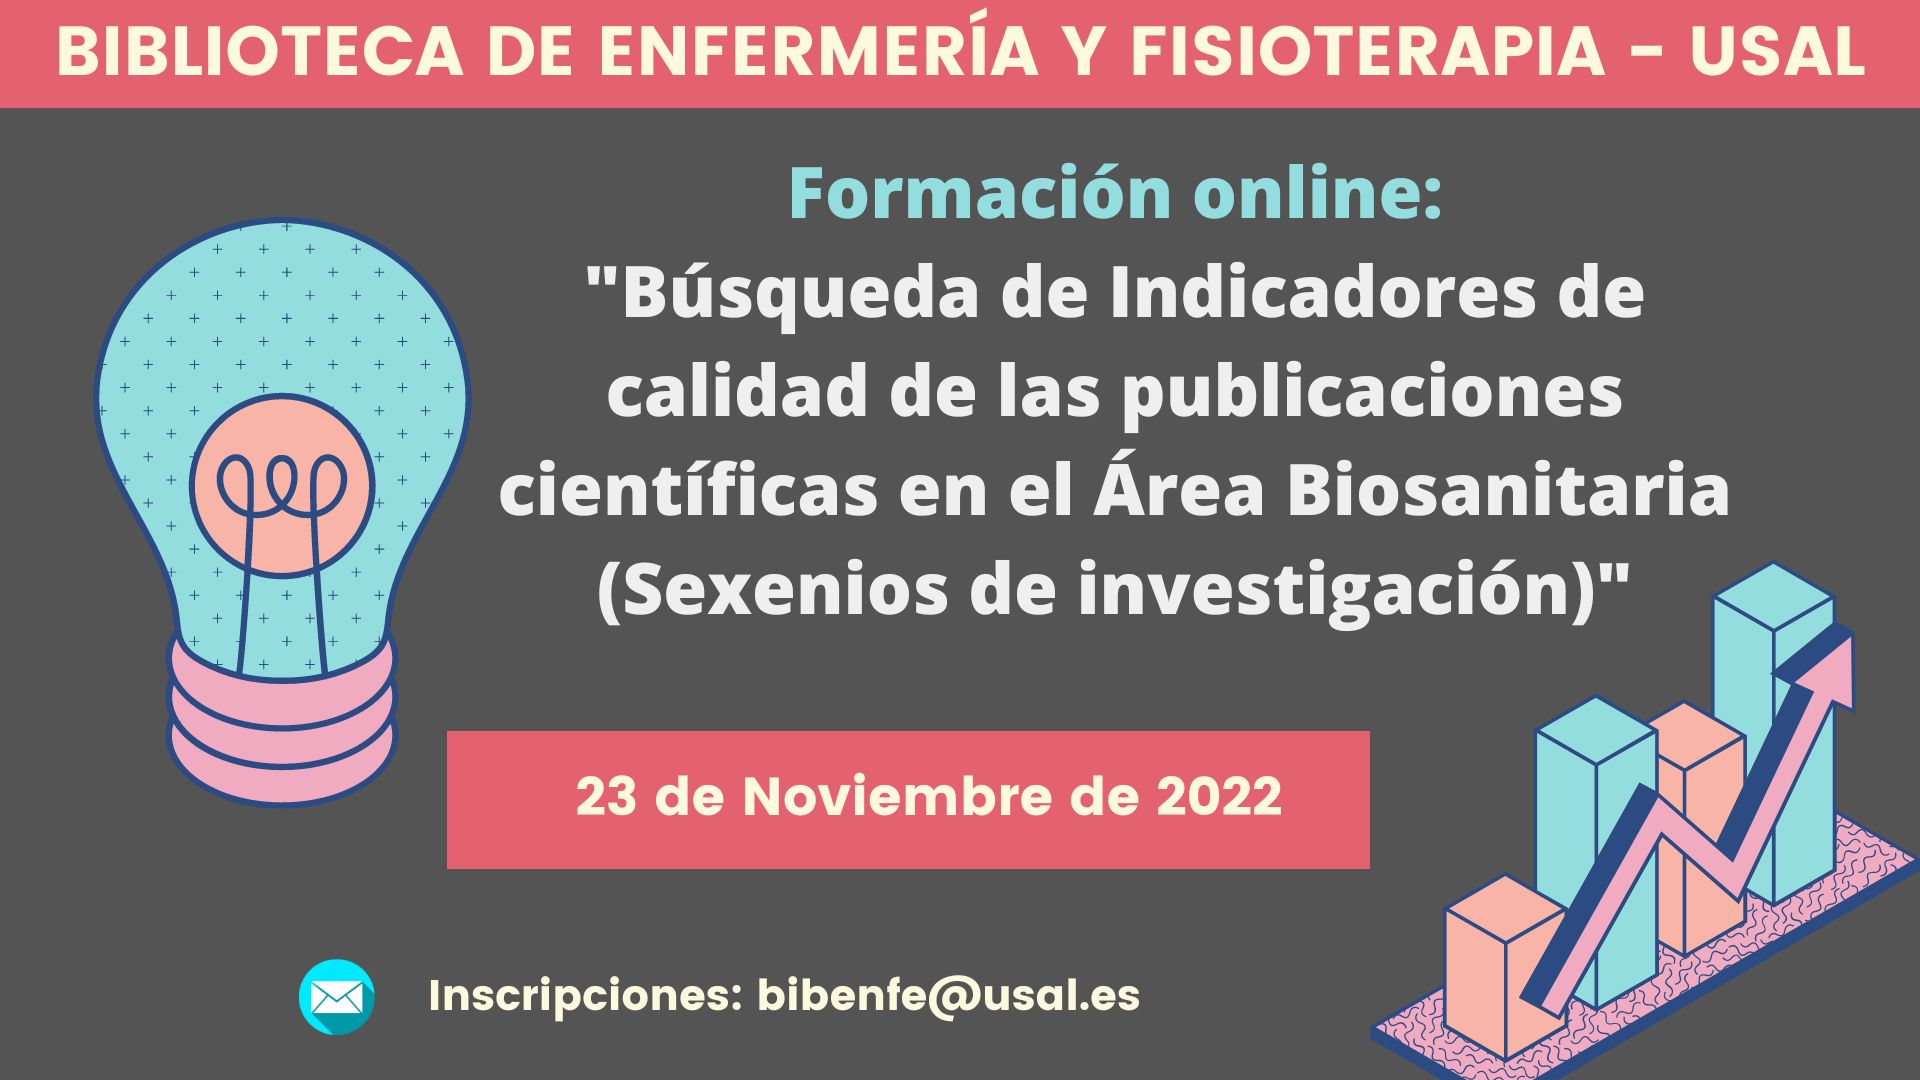 Formación online (Studium): "Búsqueda de Indicadores de calidad de las publicaciones científicas en el Área Biosanitaria (Sexenios de investigación)"